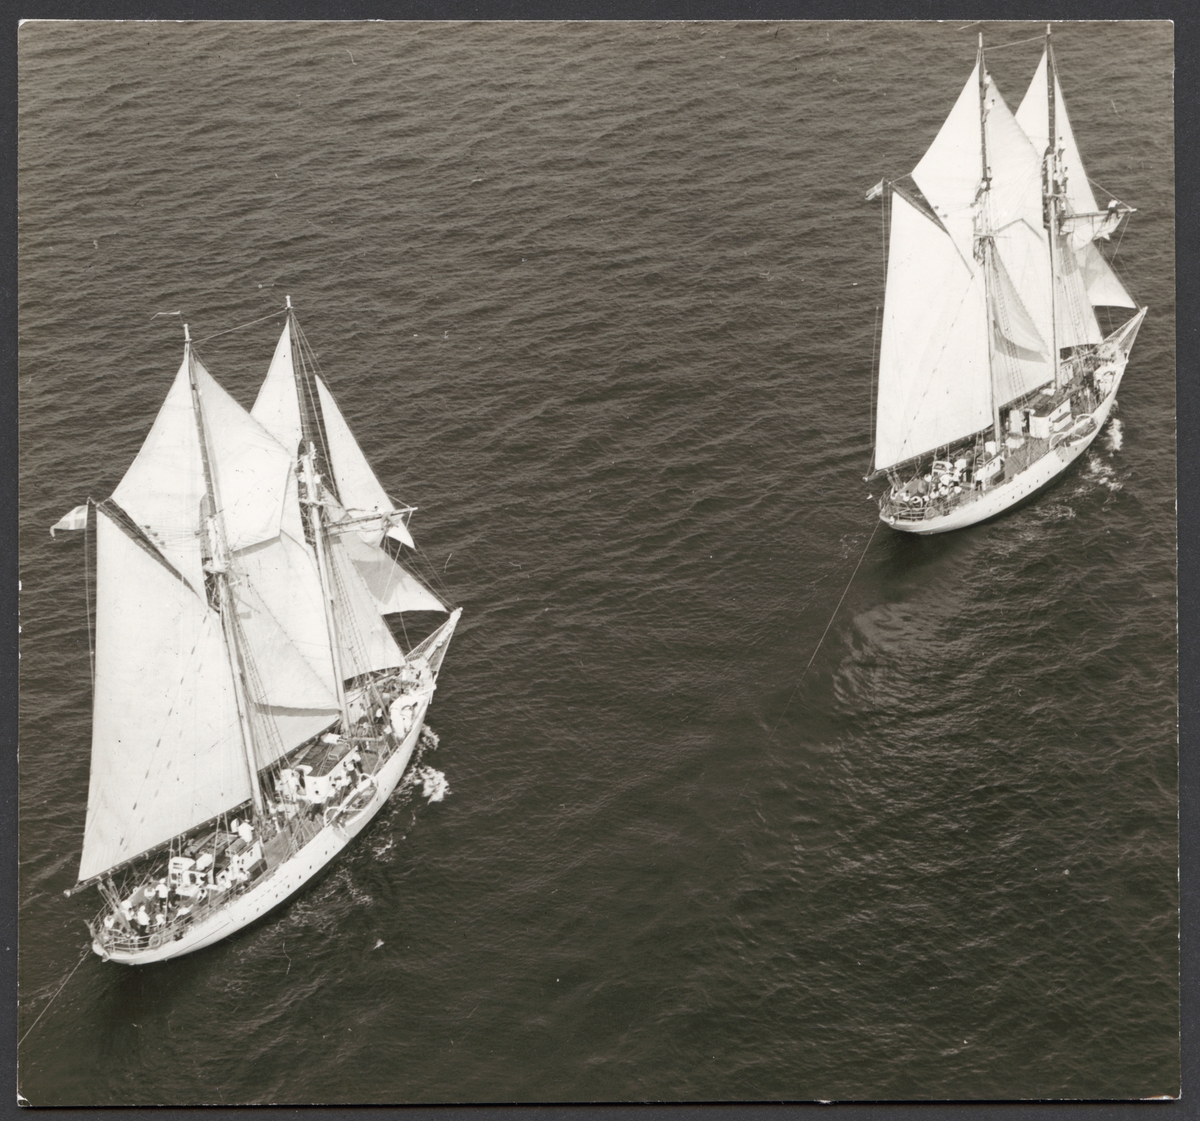 Flygbild av skolskeppen Gladan och Falken till havs. Båda fartyg har alla segel satt och gör måttlig fart.